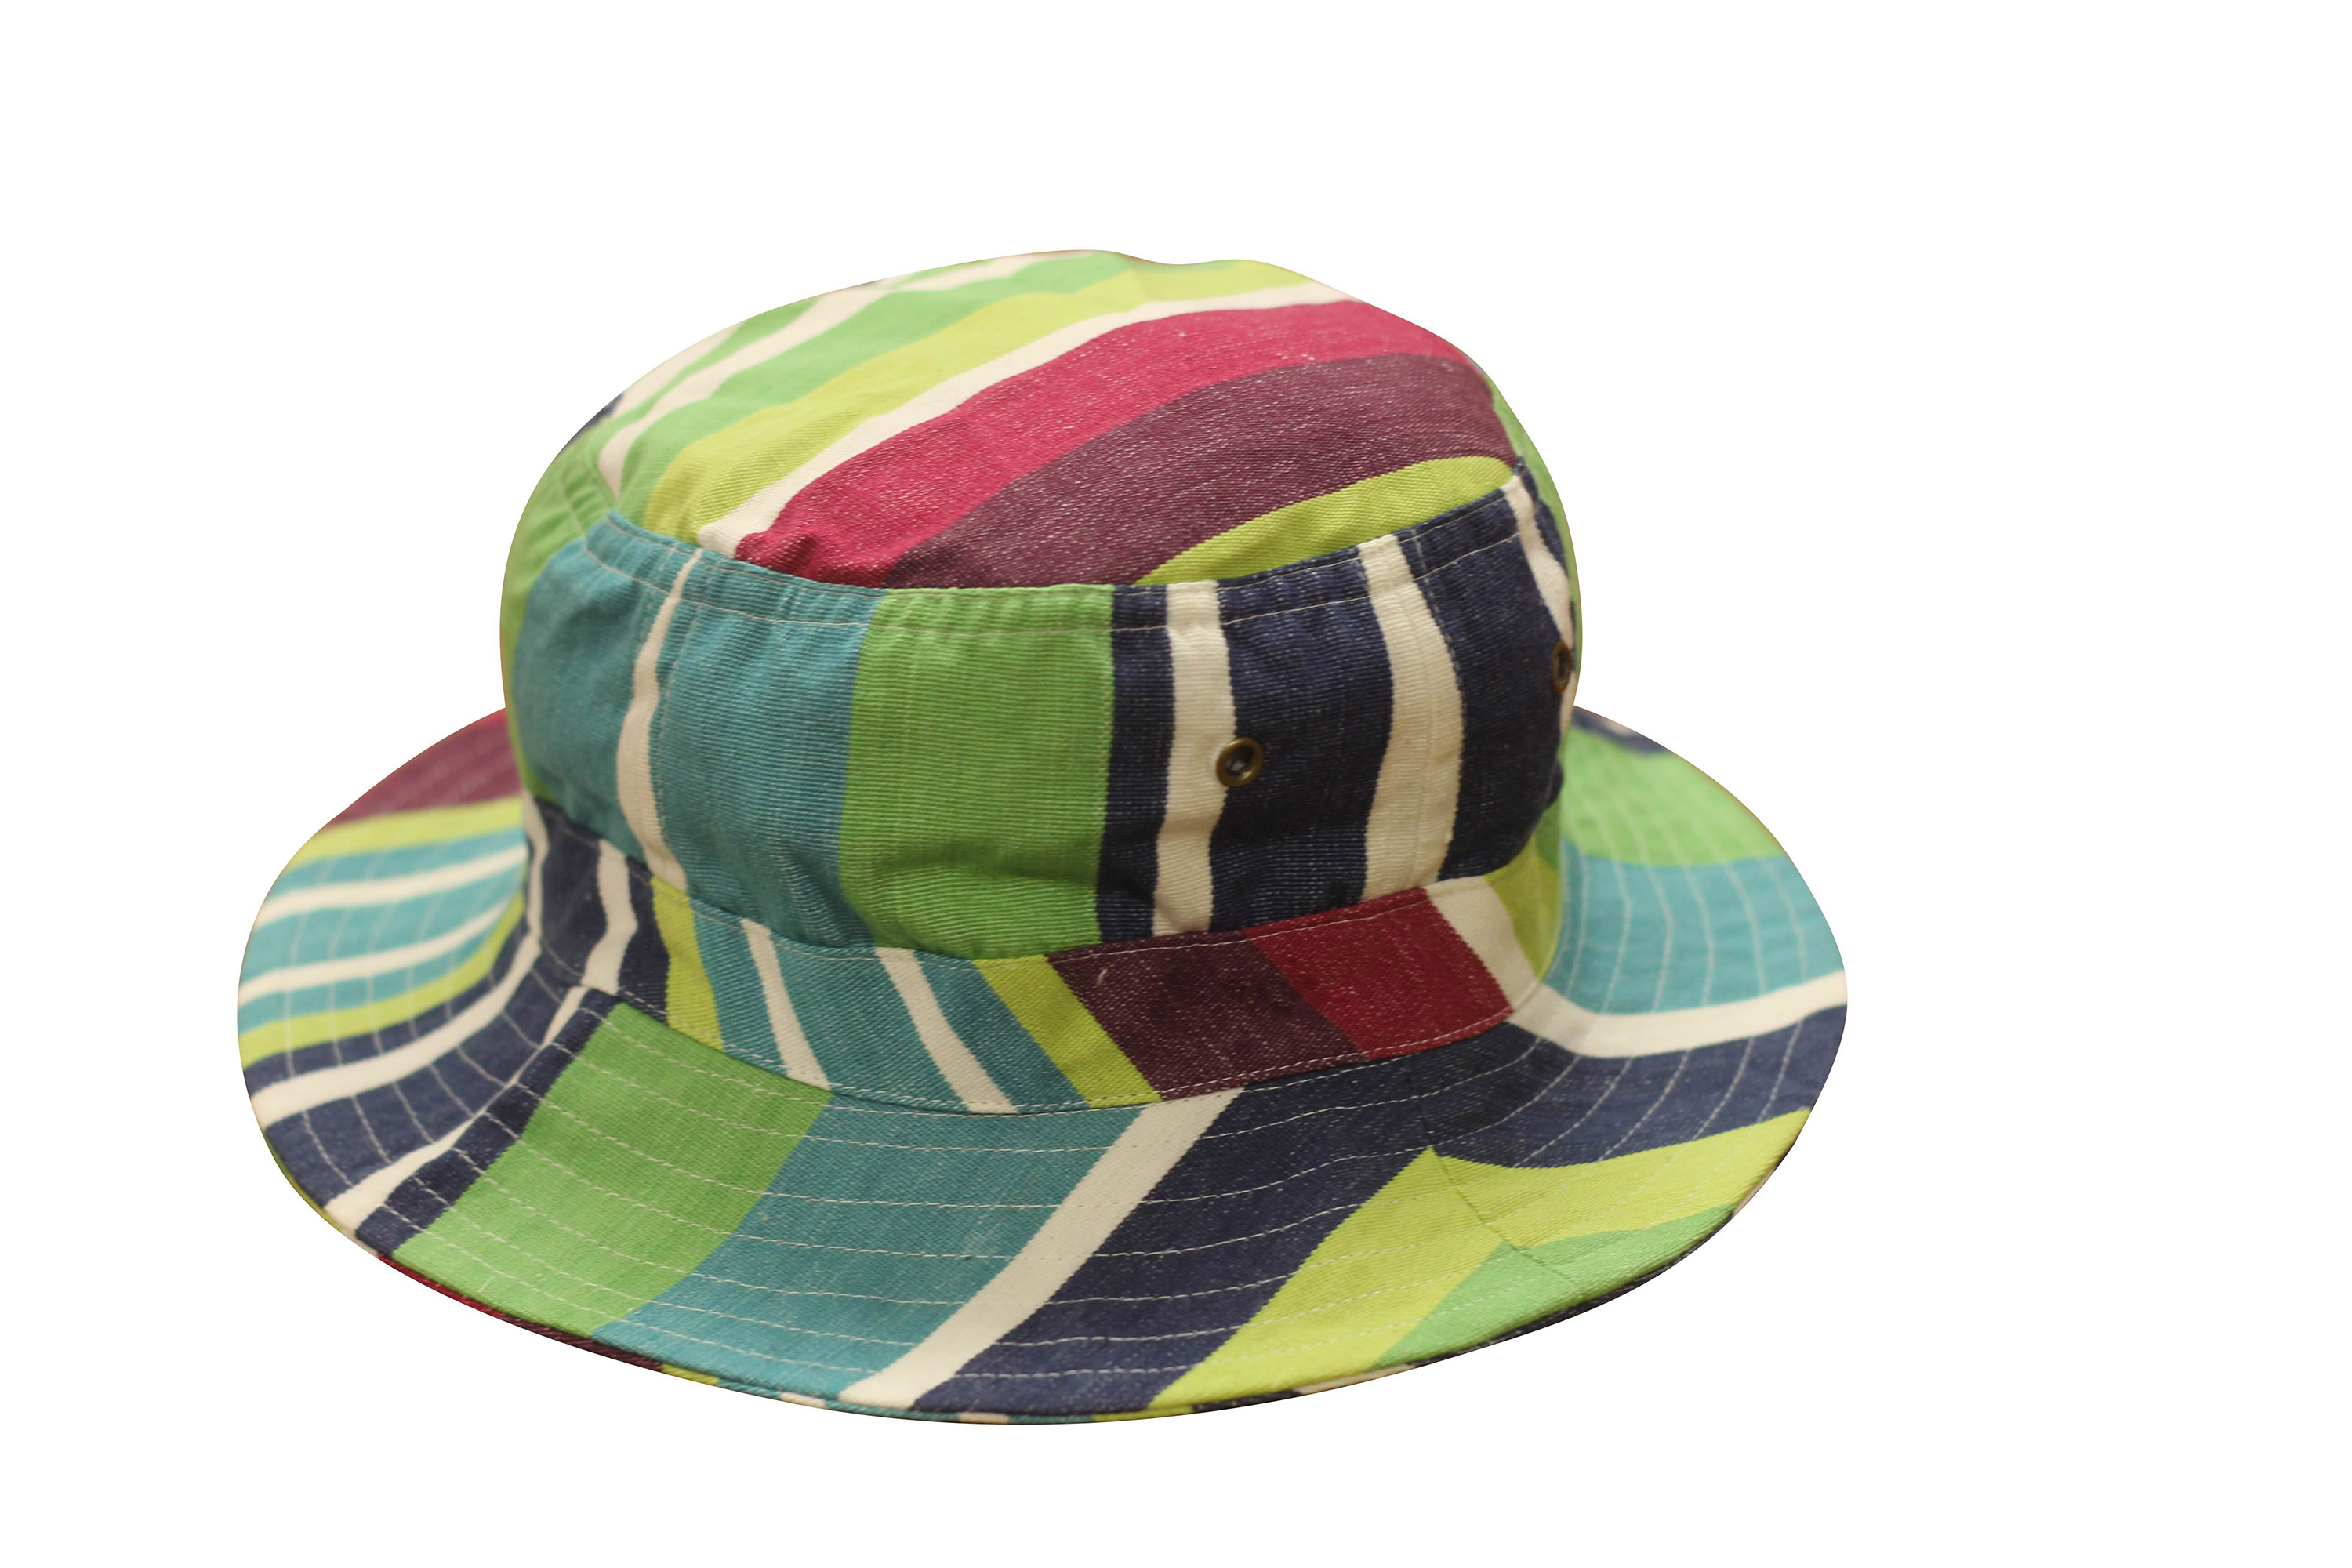 Navy Striped Sun Hats | Sun Protection Hat Tug O War Stripes | The ...